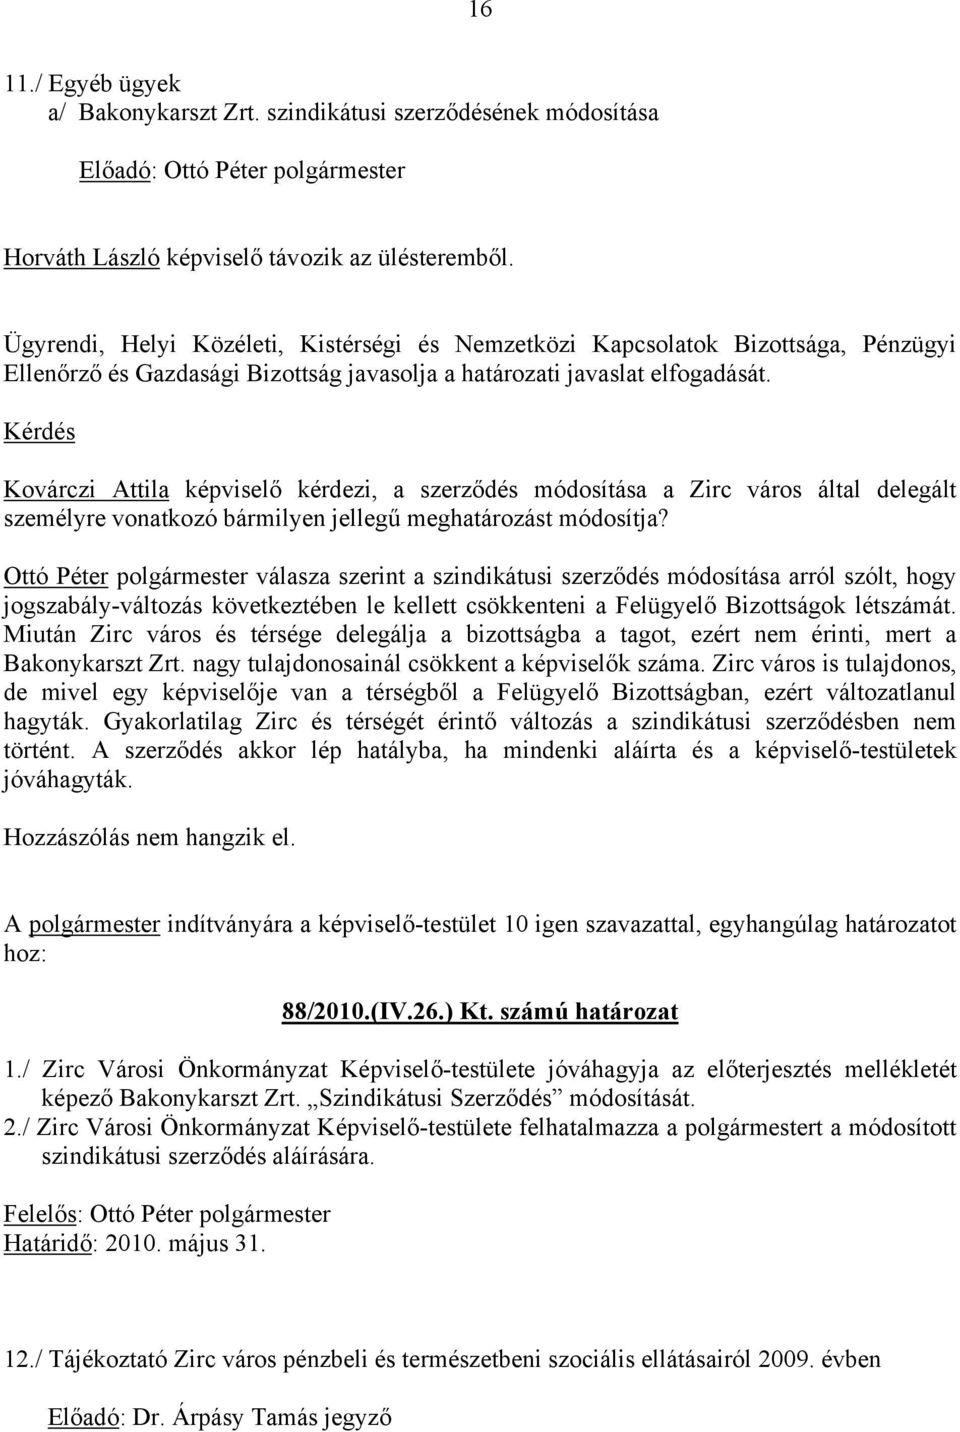 Kérdés Kovárczi Attila képviselő kérdezi, a szerződés módosítása a Zirc város által delegált személyre vonatkozó bármilyen jellegű meghatározást módosítja?